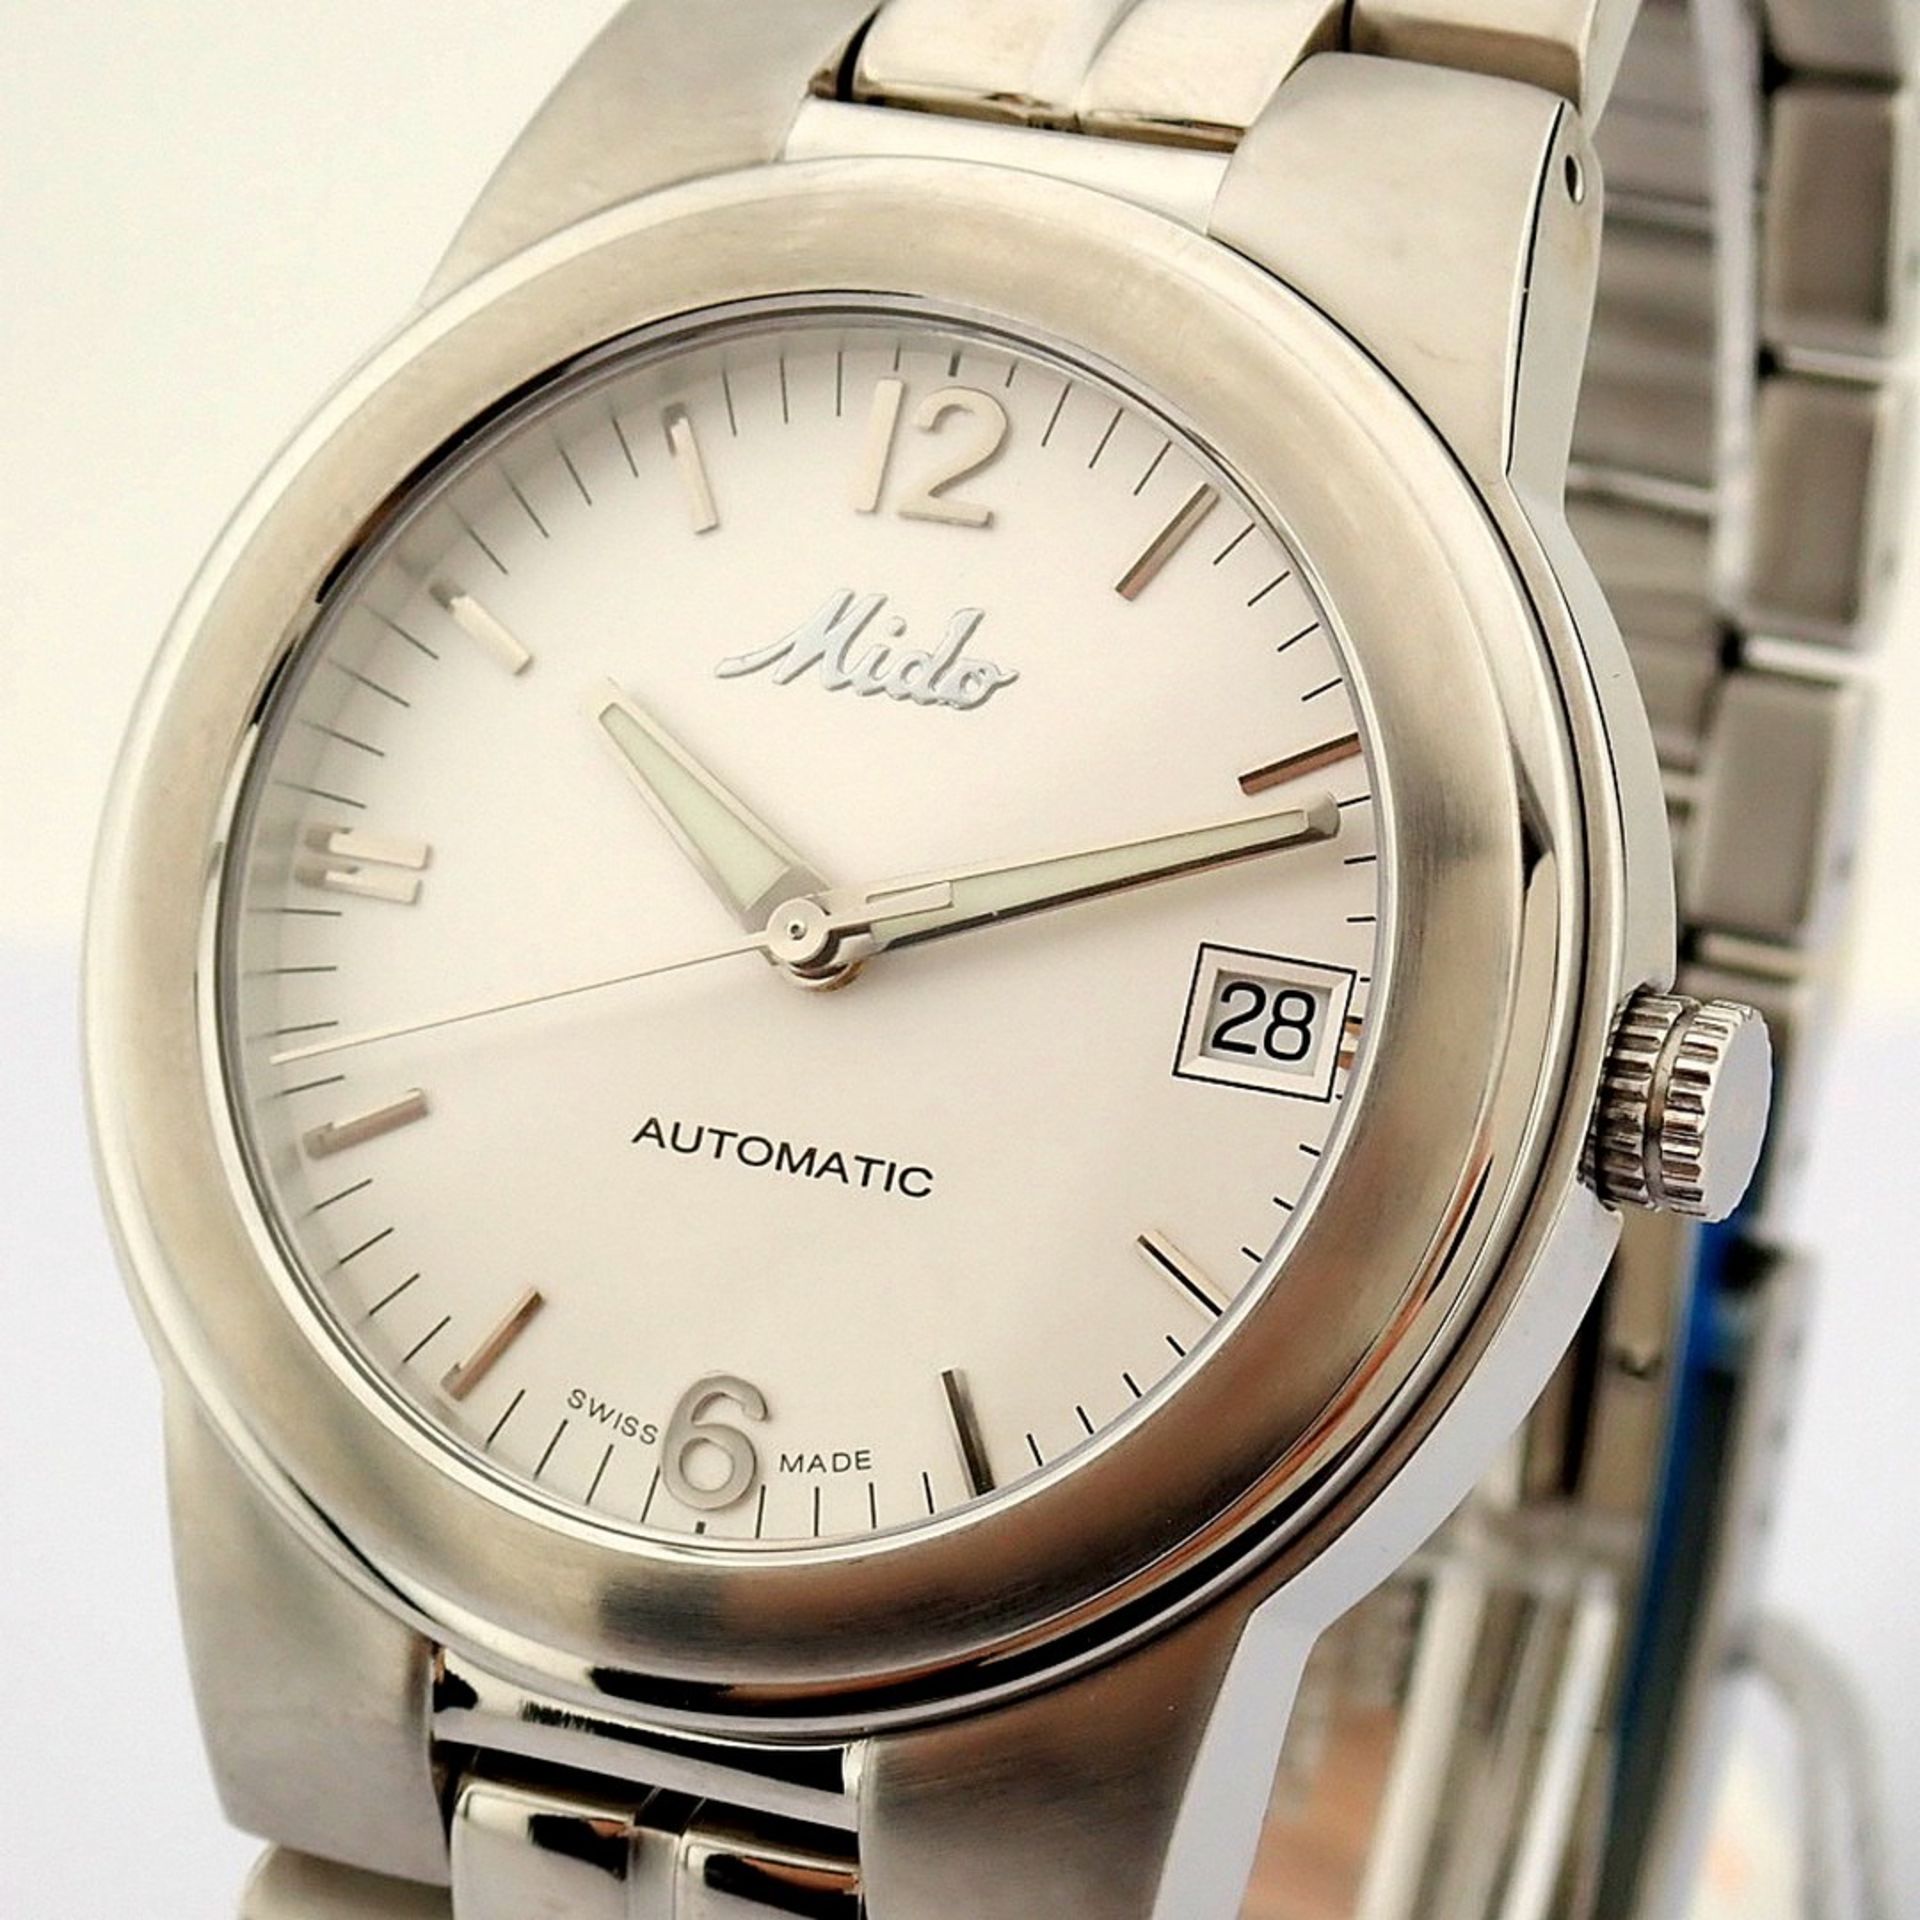 Mido / Ocean Star Aquadura (Brand new) - Gentlemen's Steel Wristwatch - Image 6 of 12